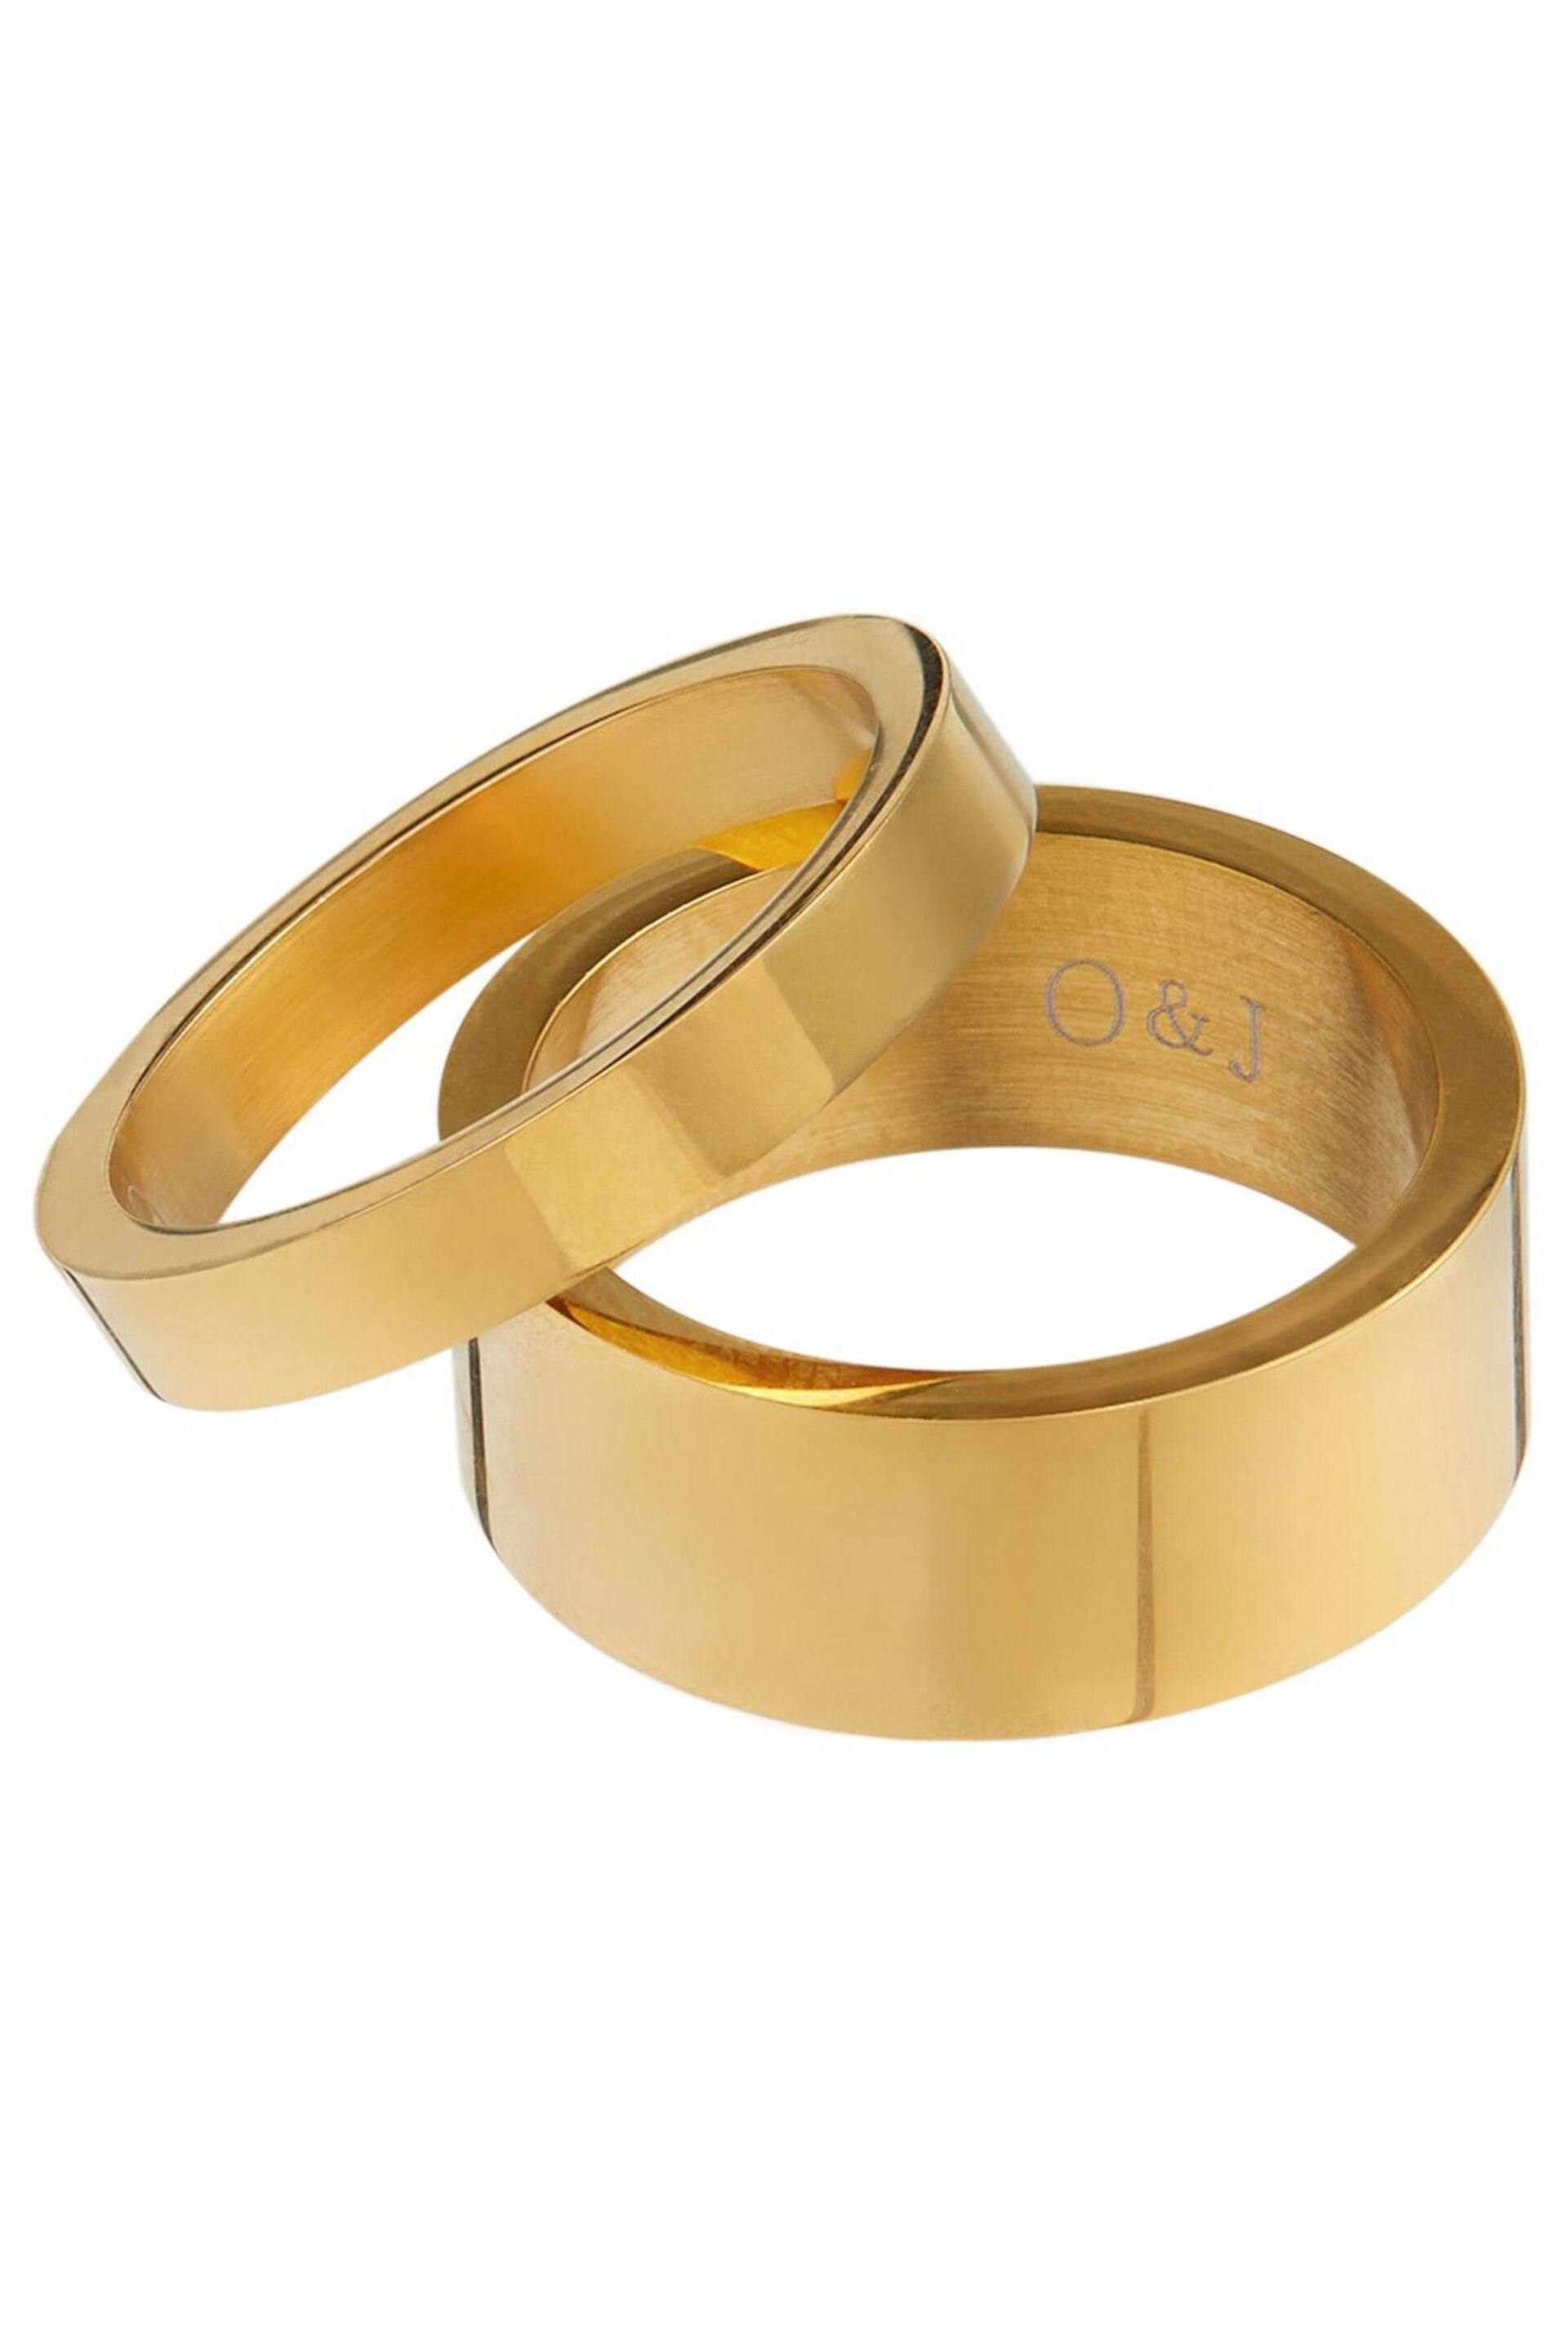 Orelia & Joe Gold Plated Metal Stacking Ring Set - Image 1 of 2